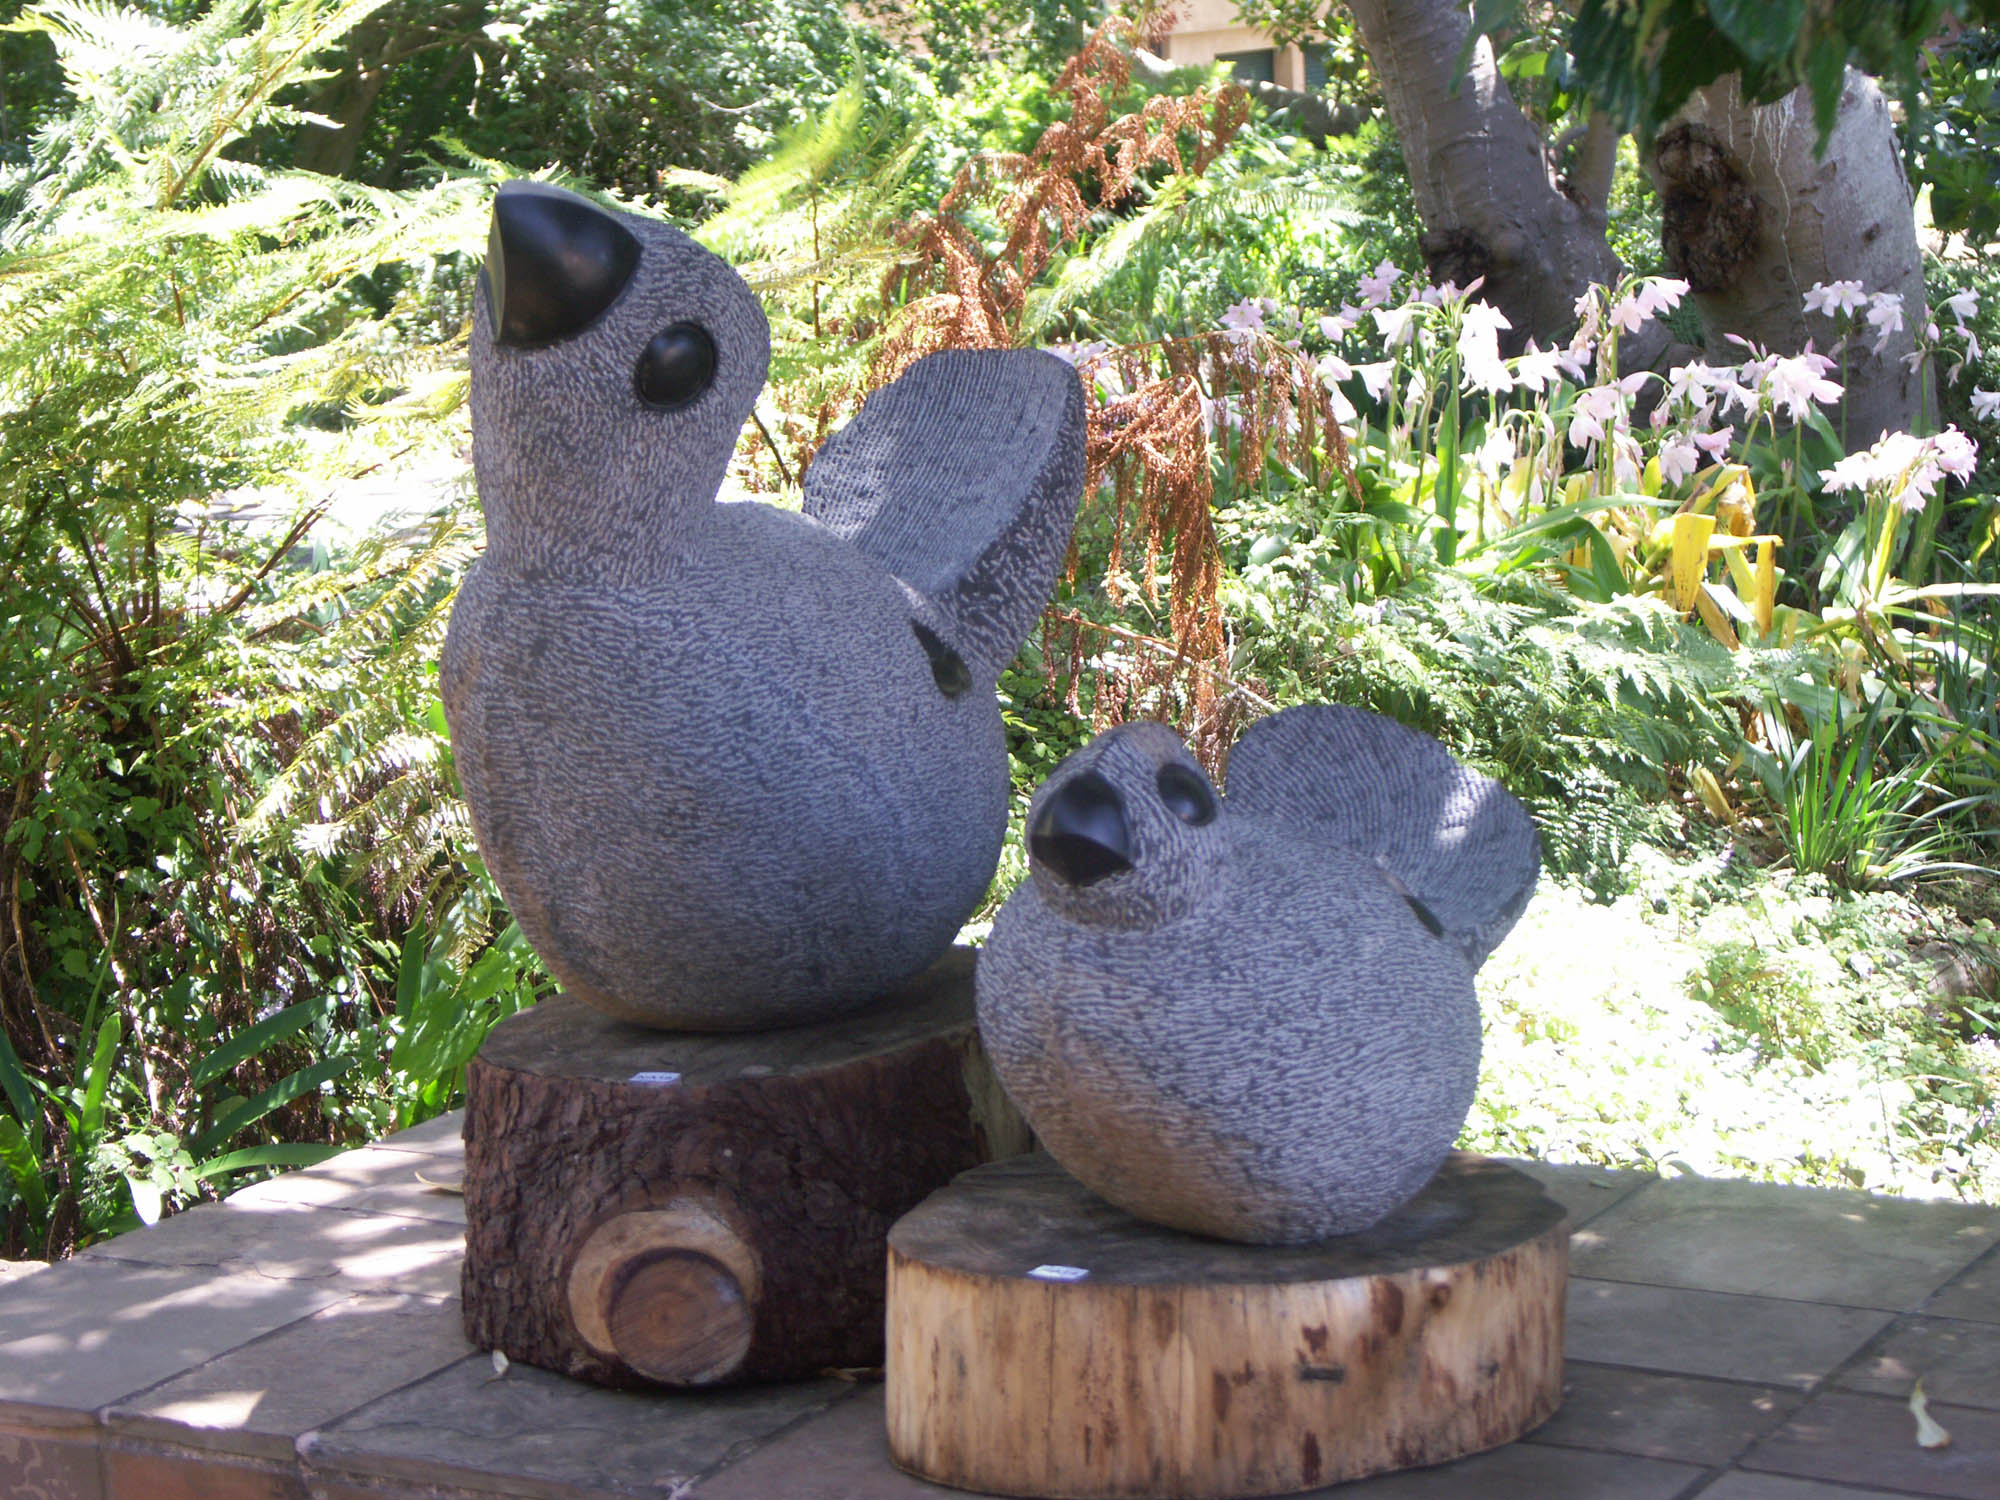 Stone birds. Надгробие для морской свинки. Памятник морской свинке. Статуи морских свинок. Статуэтка на балконе.